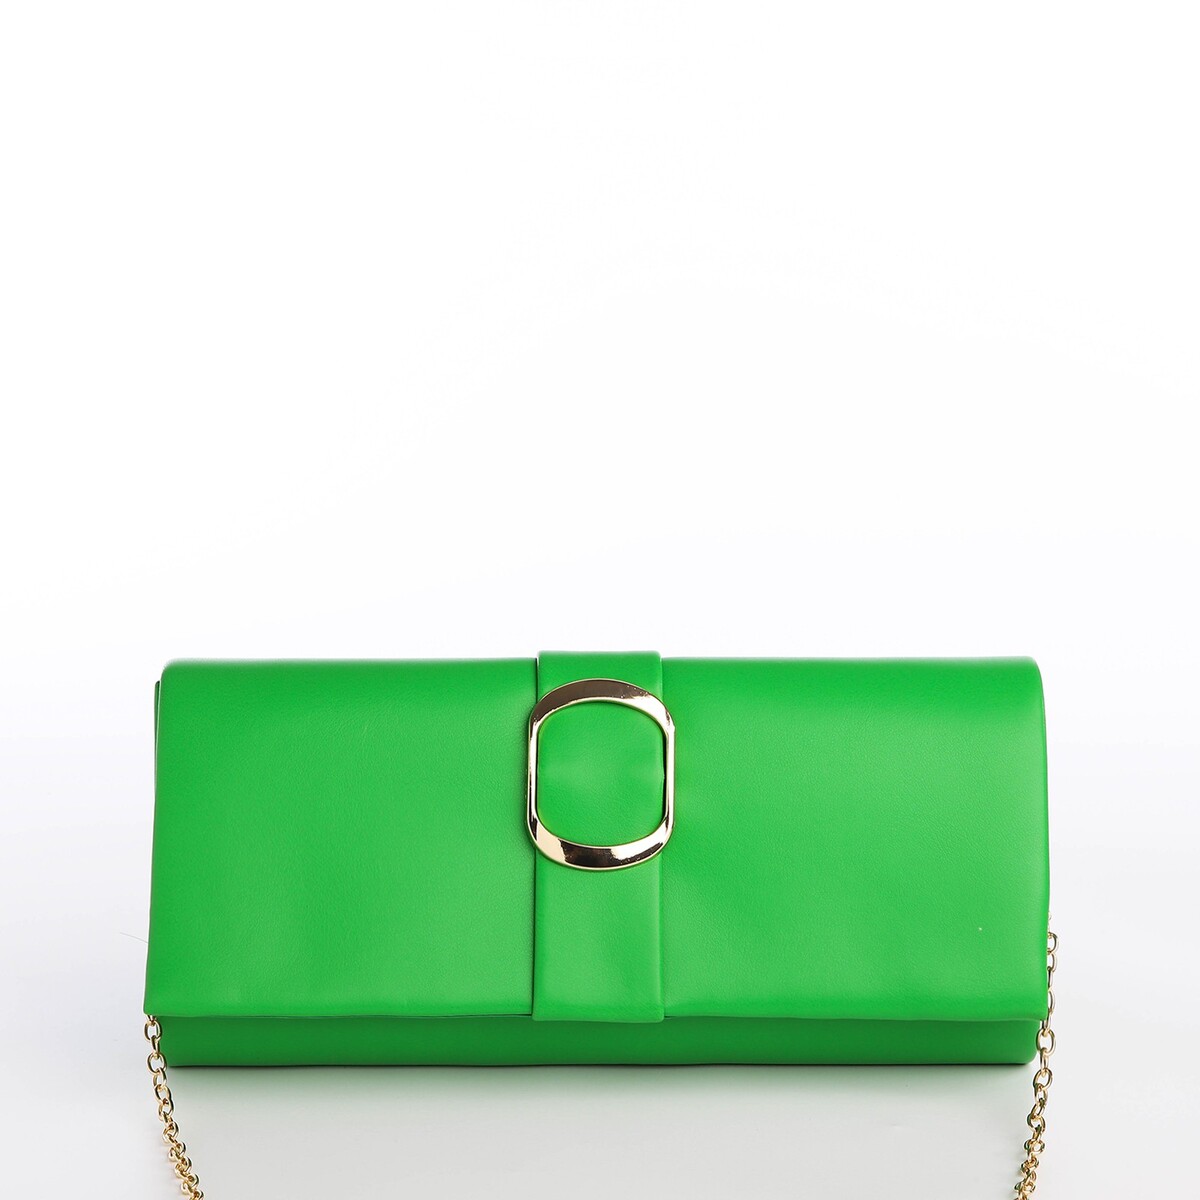 Сумка-клатч на магните, цвет зеленый сумка клатч на магните зеленый